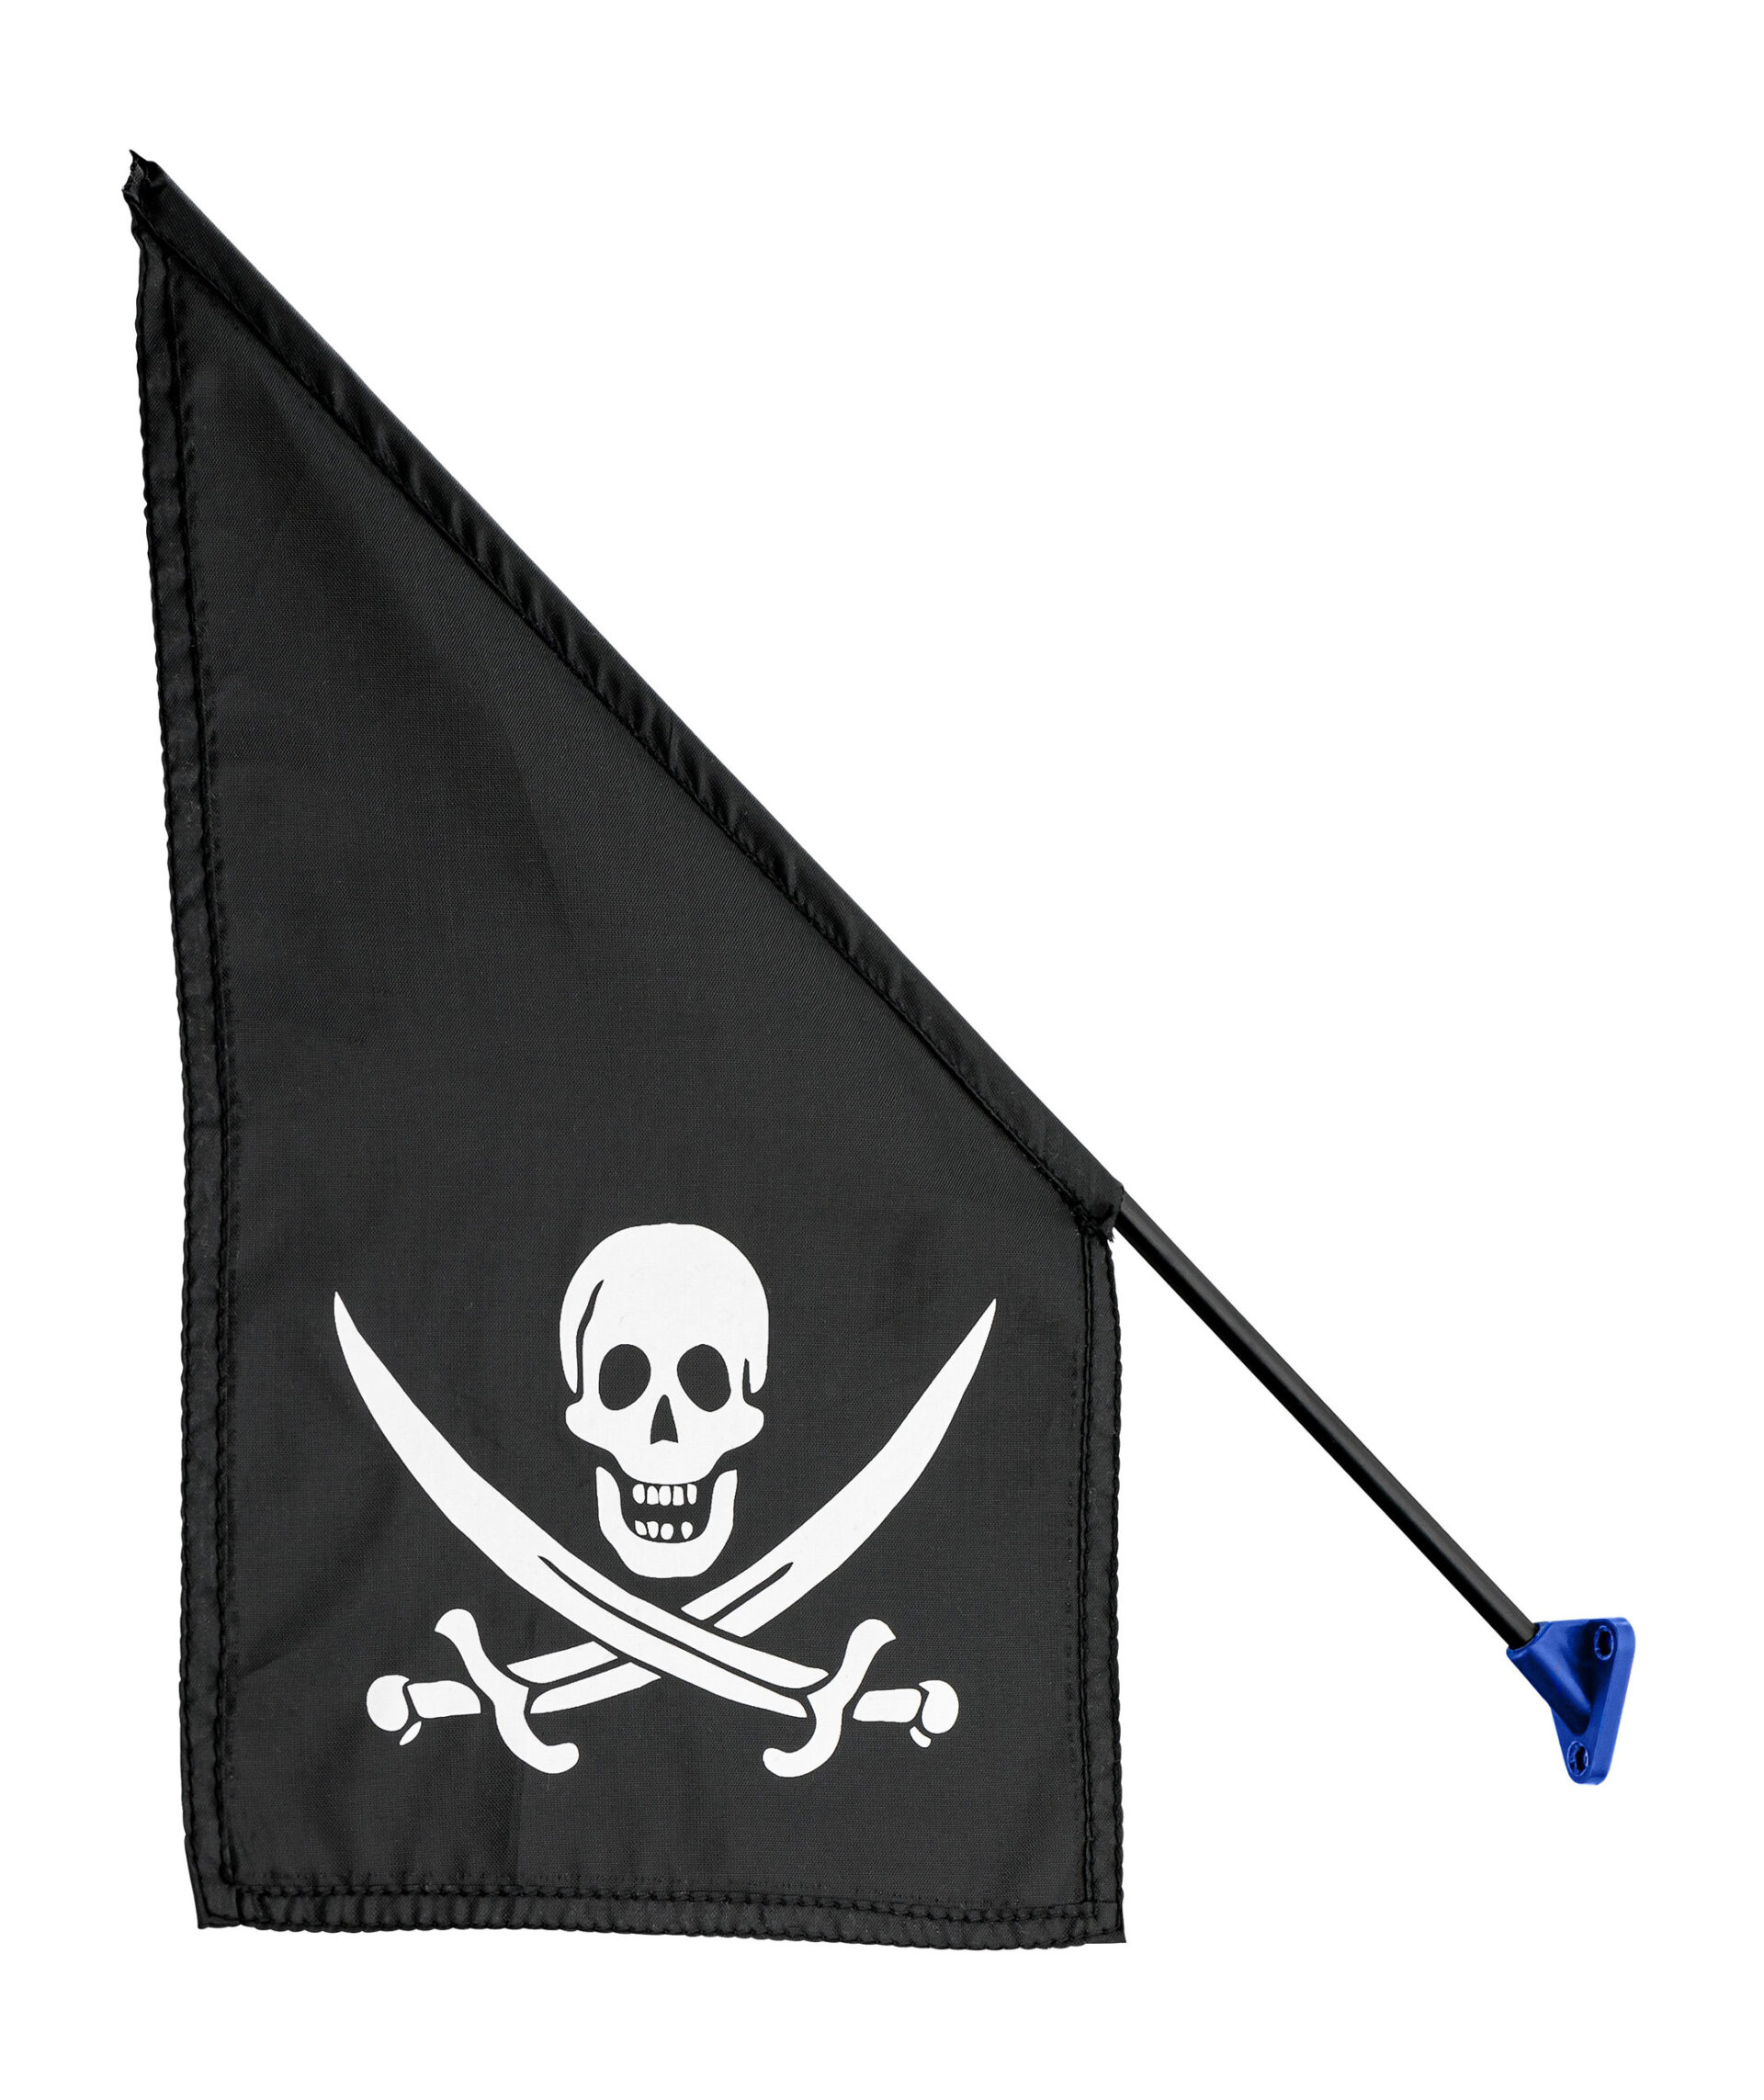 Fahne mit Stange aus Kunststoff